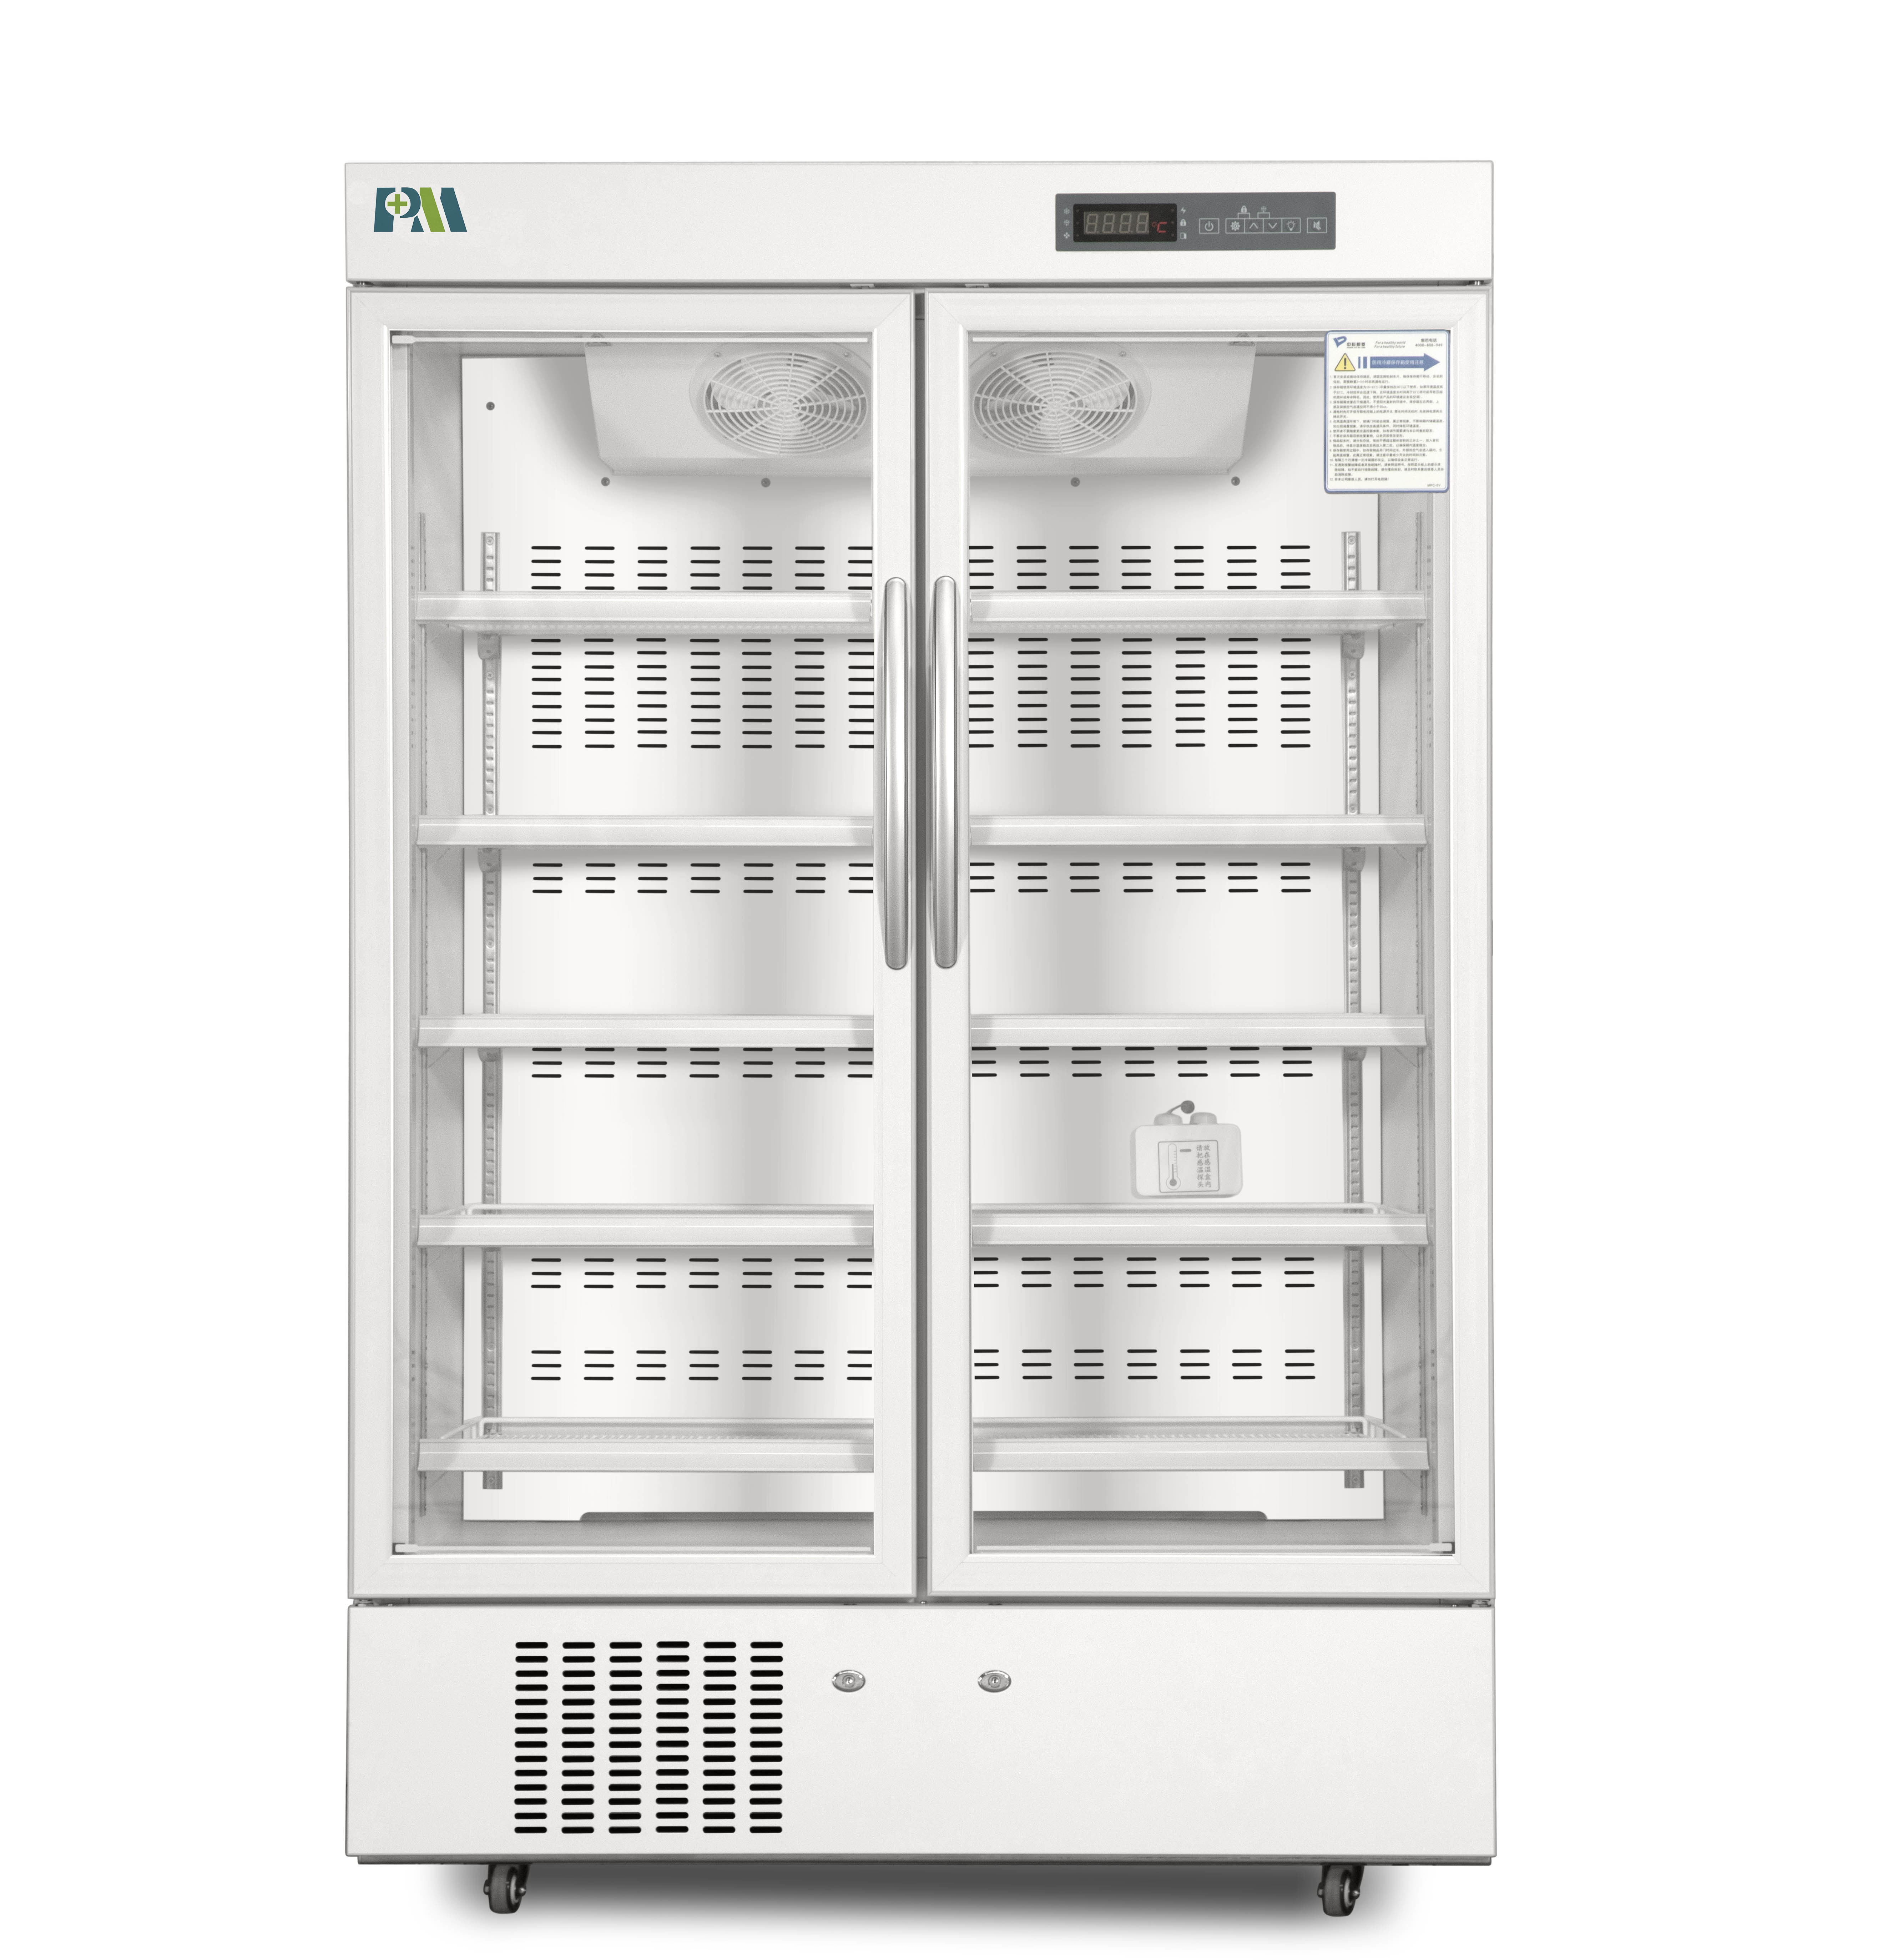 Διπλό ψυγείο βαθμού φαρμακείων πορτών γυαλιού με το εσωτερικό φως των οδηγήσεων